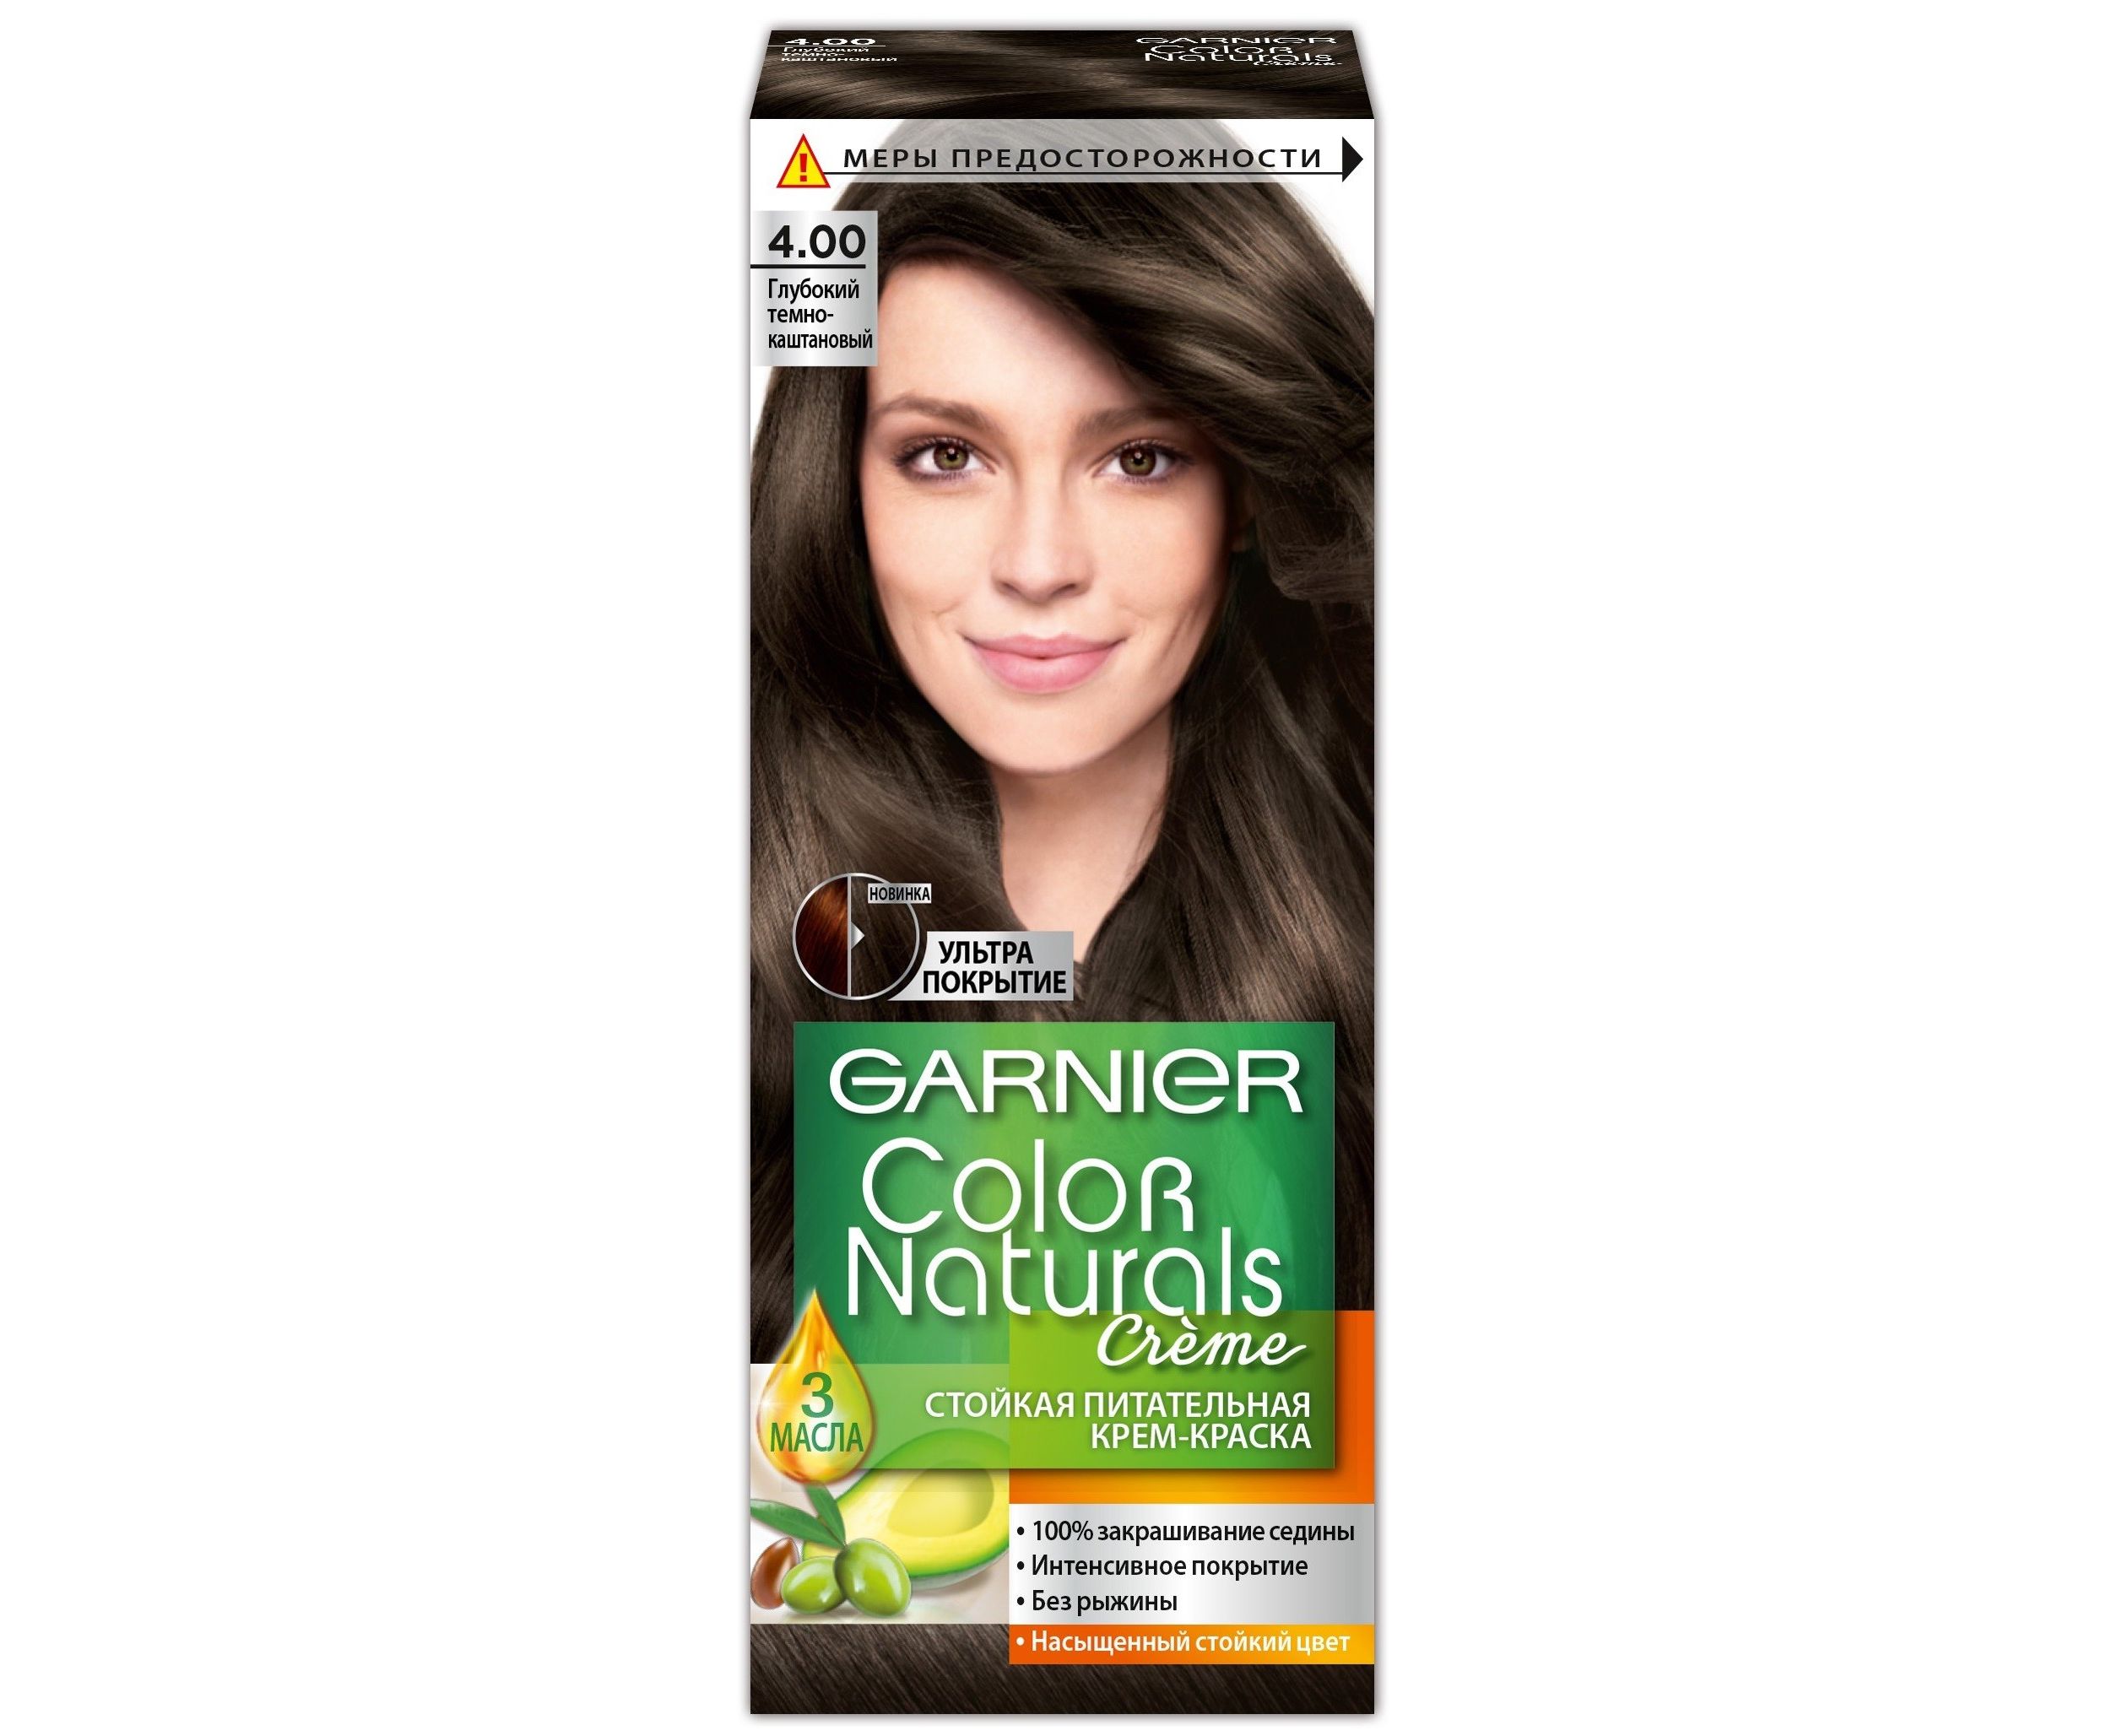 Крем-краска для волос Garnier Color Naturals, 4.0 глубокий темно-каштановый, 110 мл крем краска stylist color pro fito косметик 1 0 глубокий 115мл